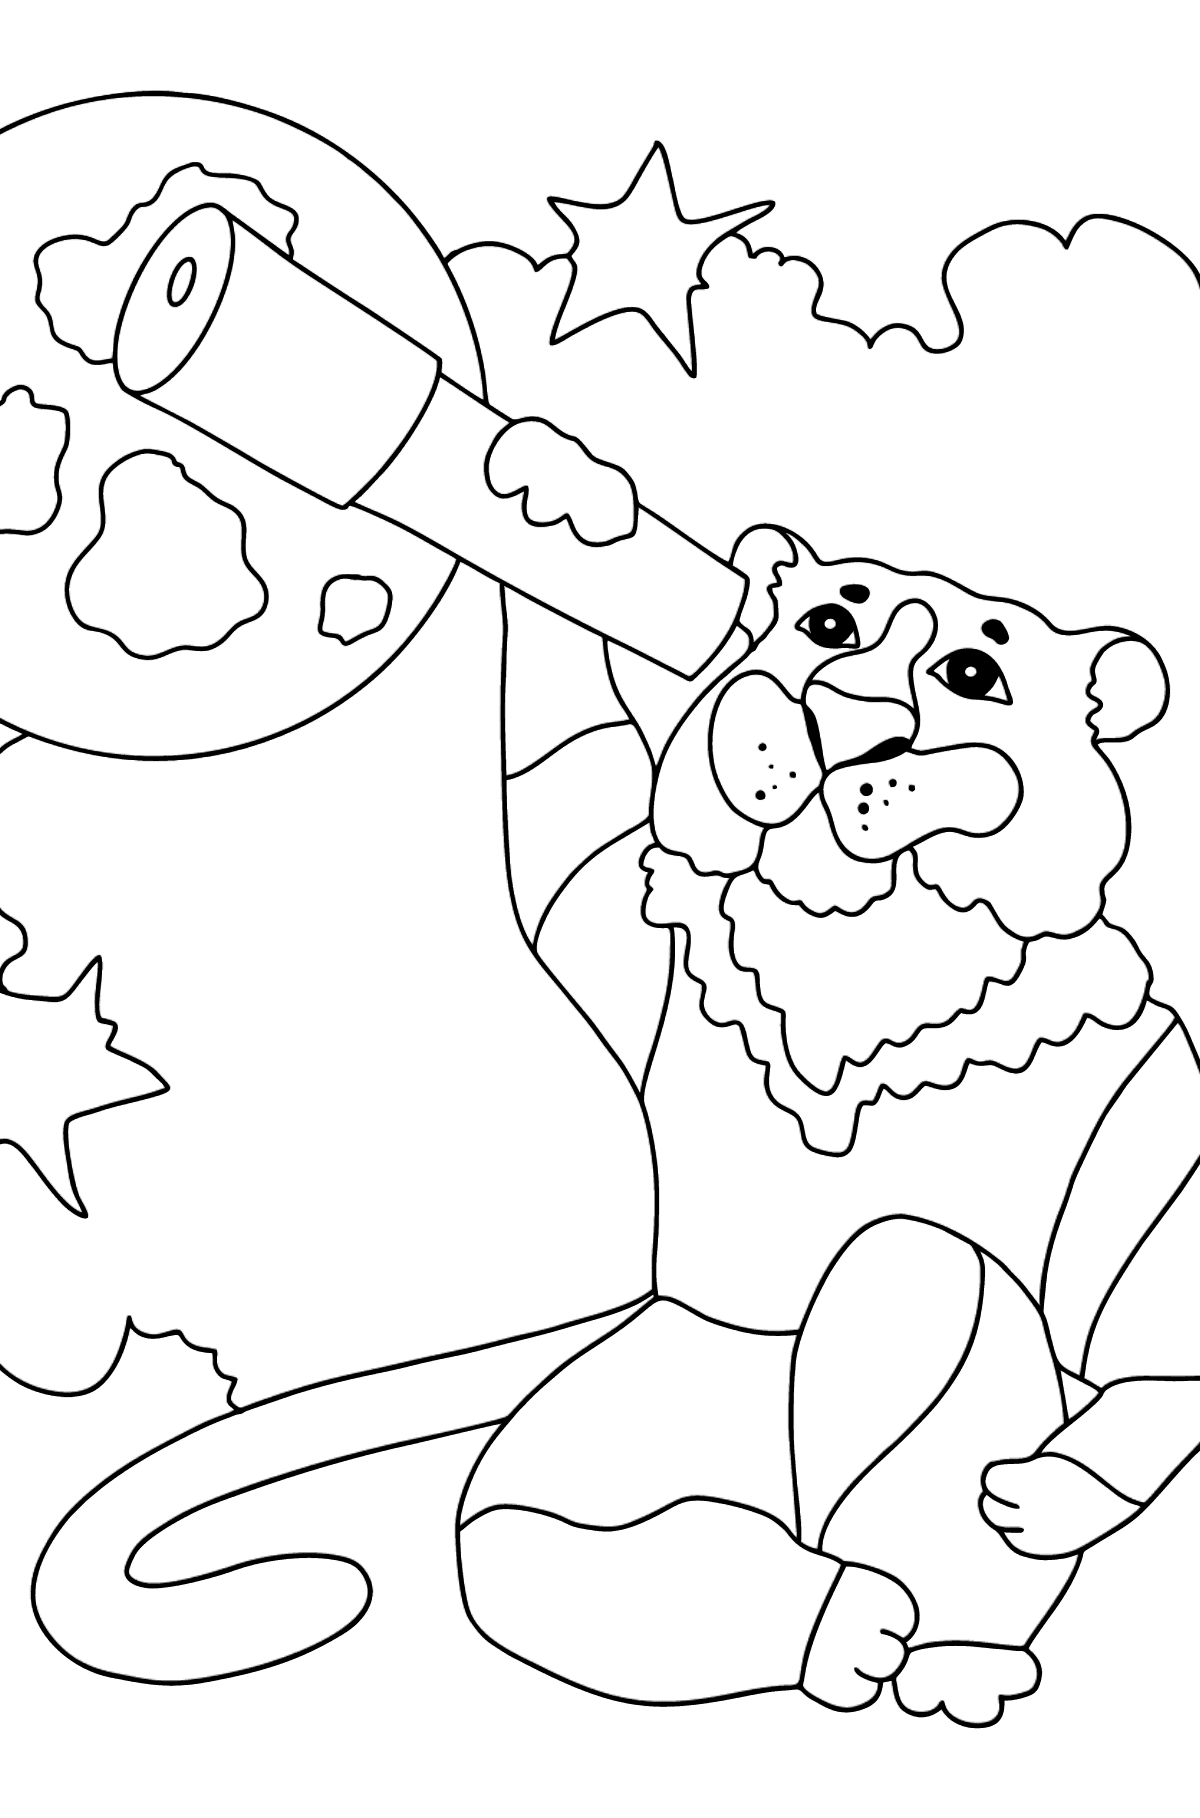 Desenho de tigre curioso para colorir (difícil) - Imagens para Colorir para Crianças